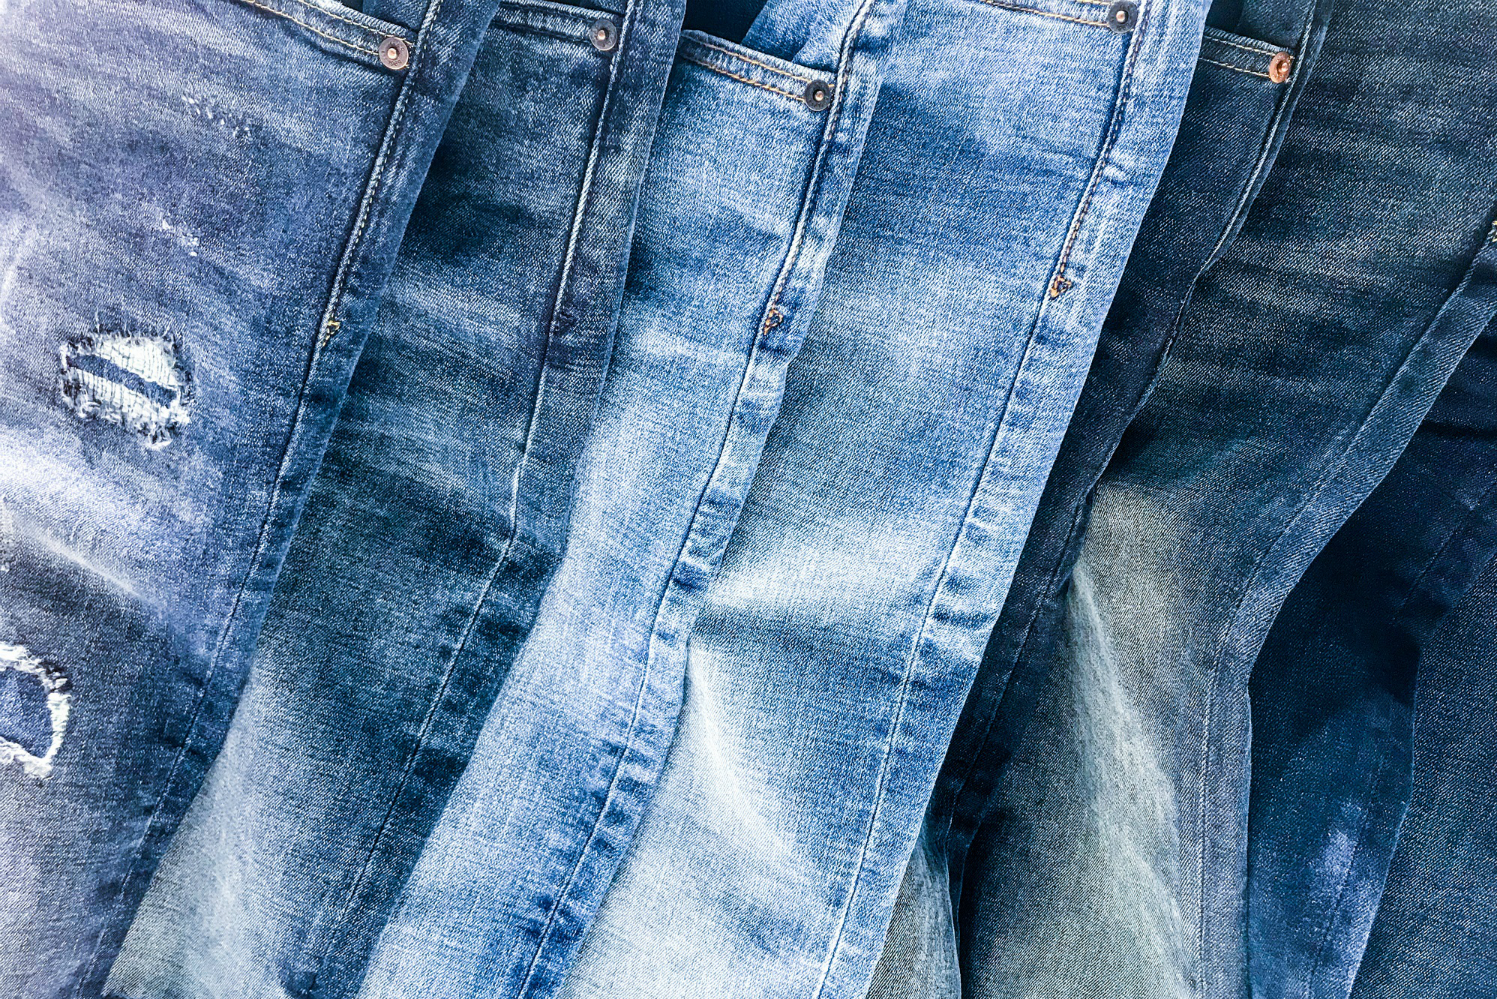 New jeans фото. Джинсовый фон. Джинсы из настоящей джинсовой ткани. Джинсы Racing car Denim est.1998. Chips proble джинсы.